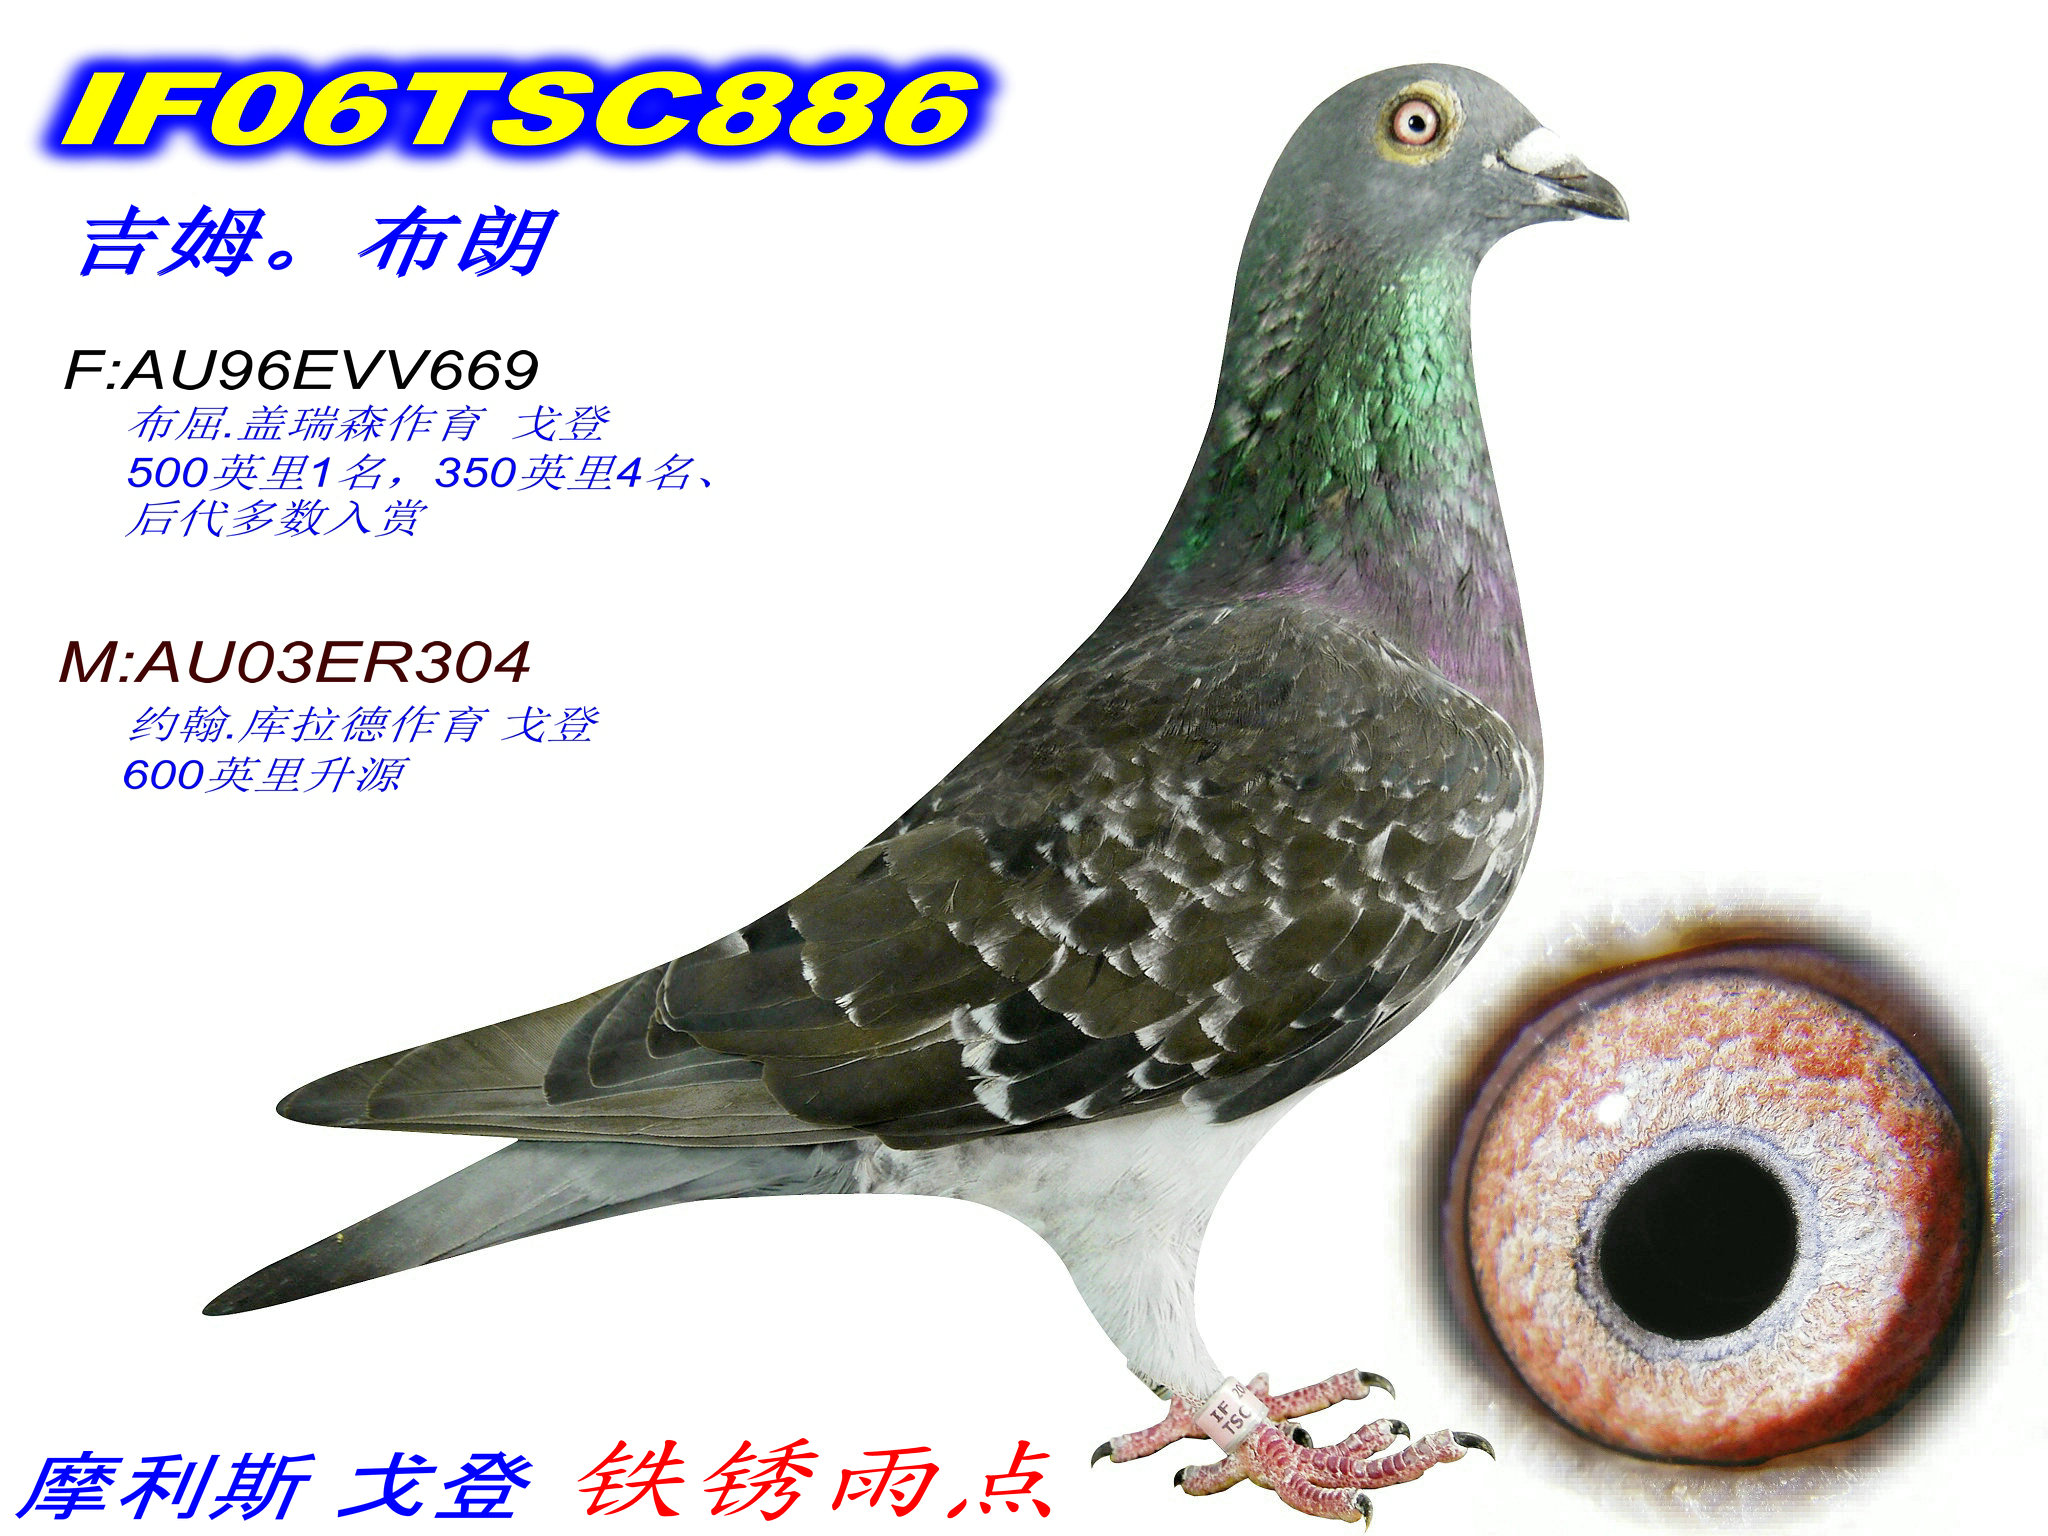 台湾戈登鸽系图片